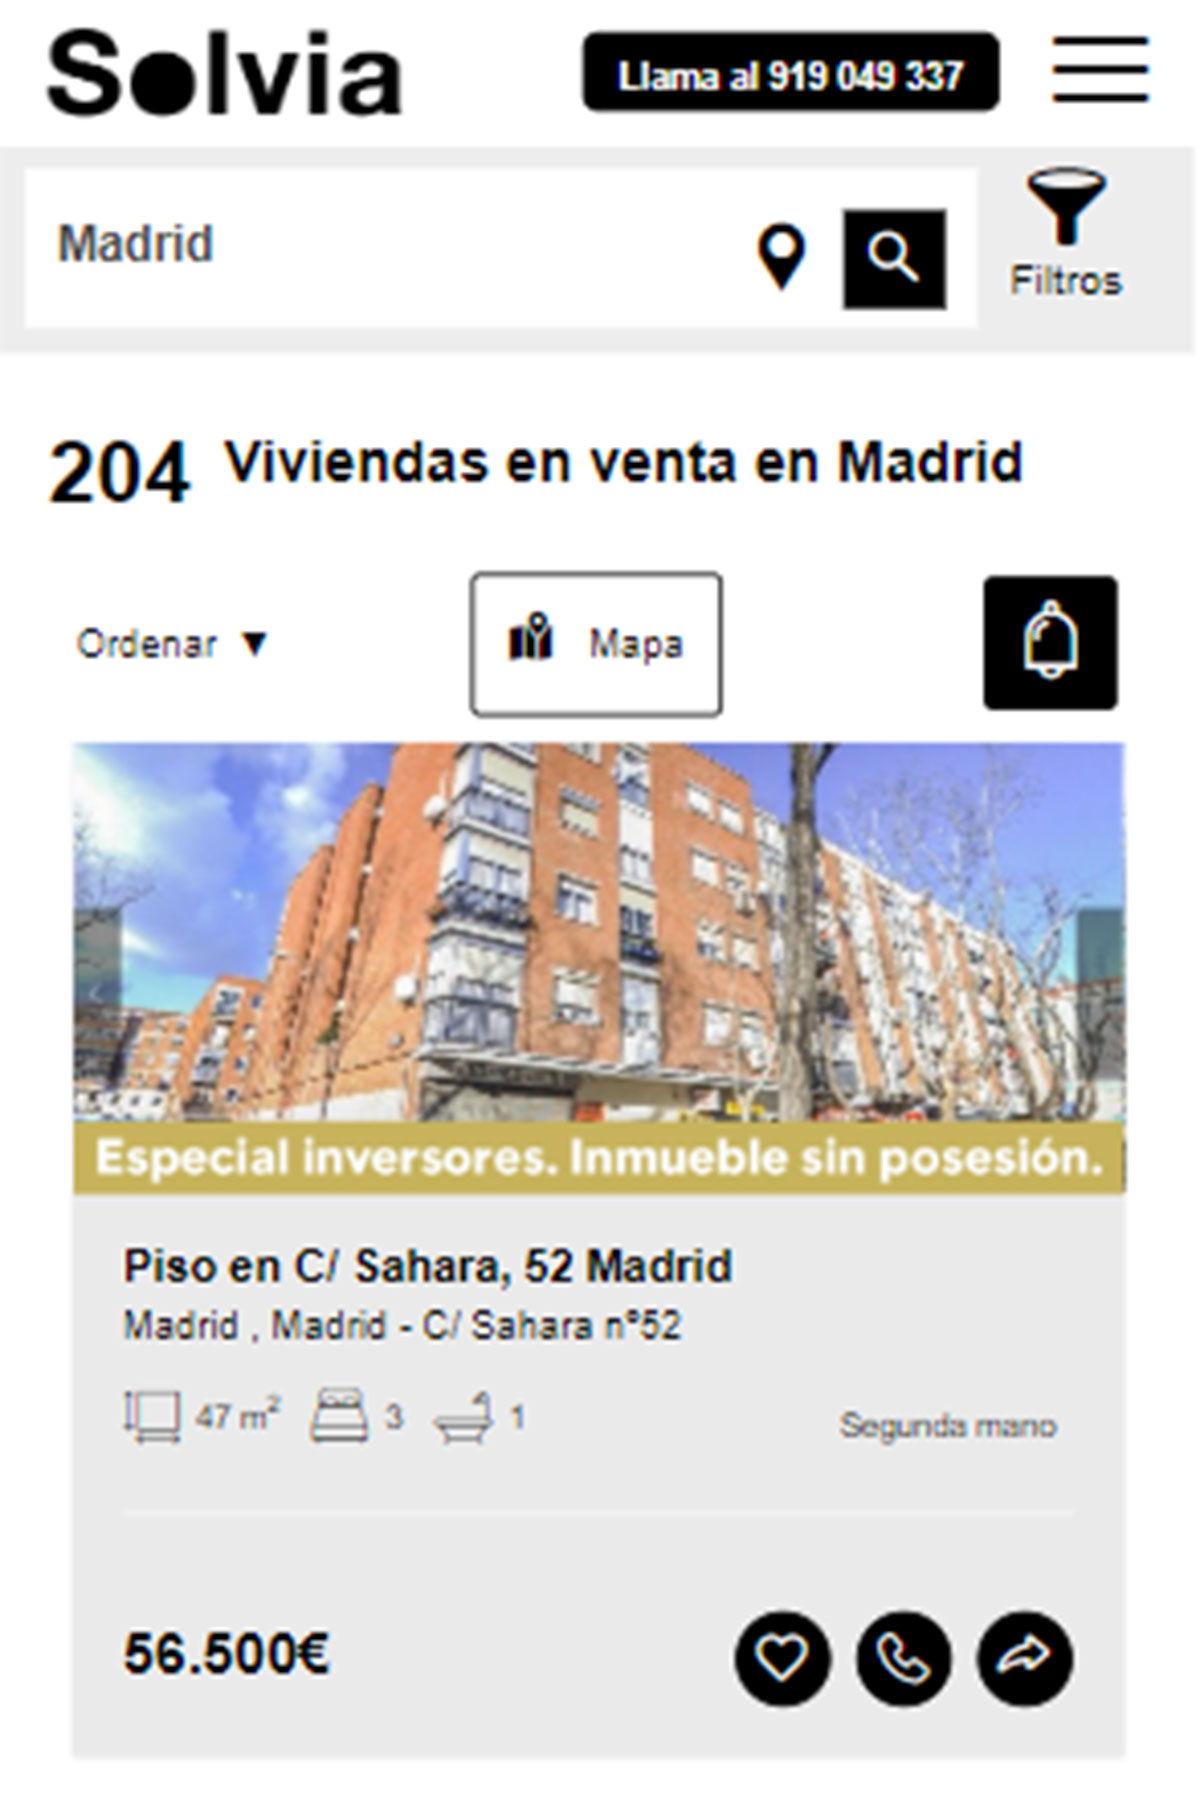 Piso en la ciudad de Madrid por 56.500 euros